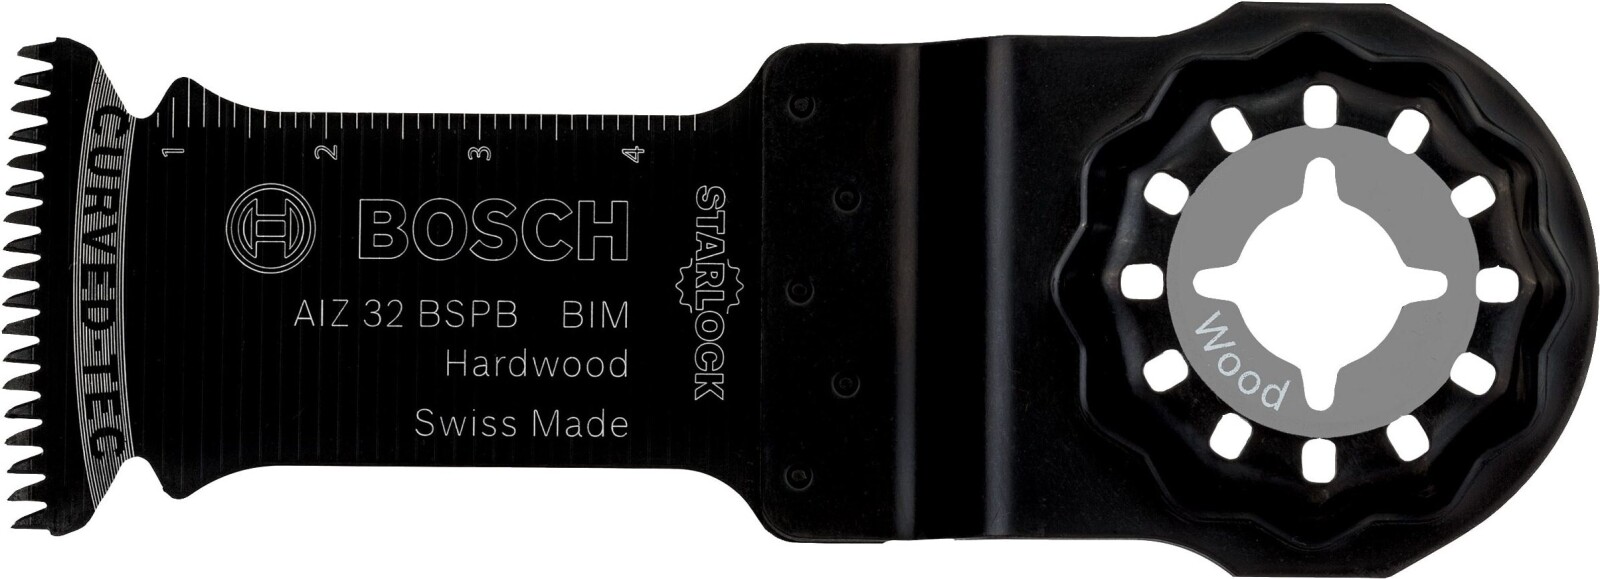 Полотно пильное погружное BOSCH BIM AIZ 32 BSPB Hard Wood (2609256946)